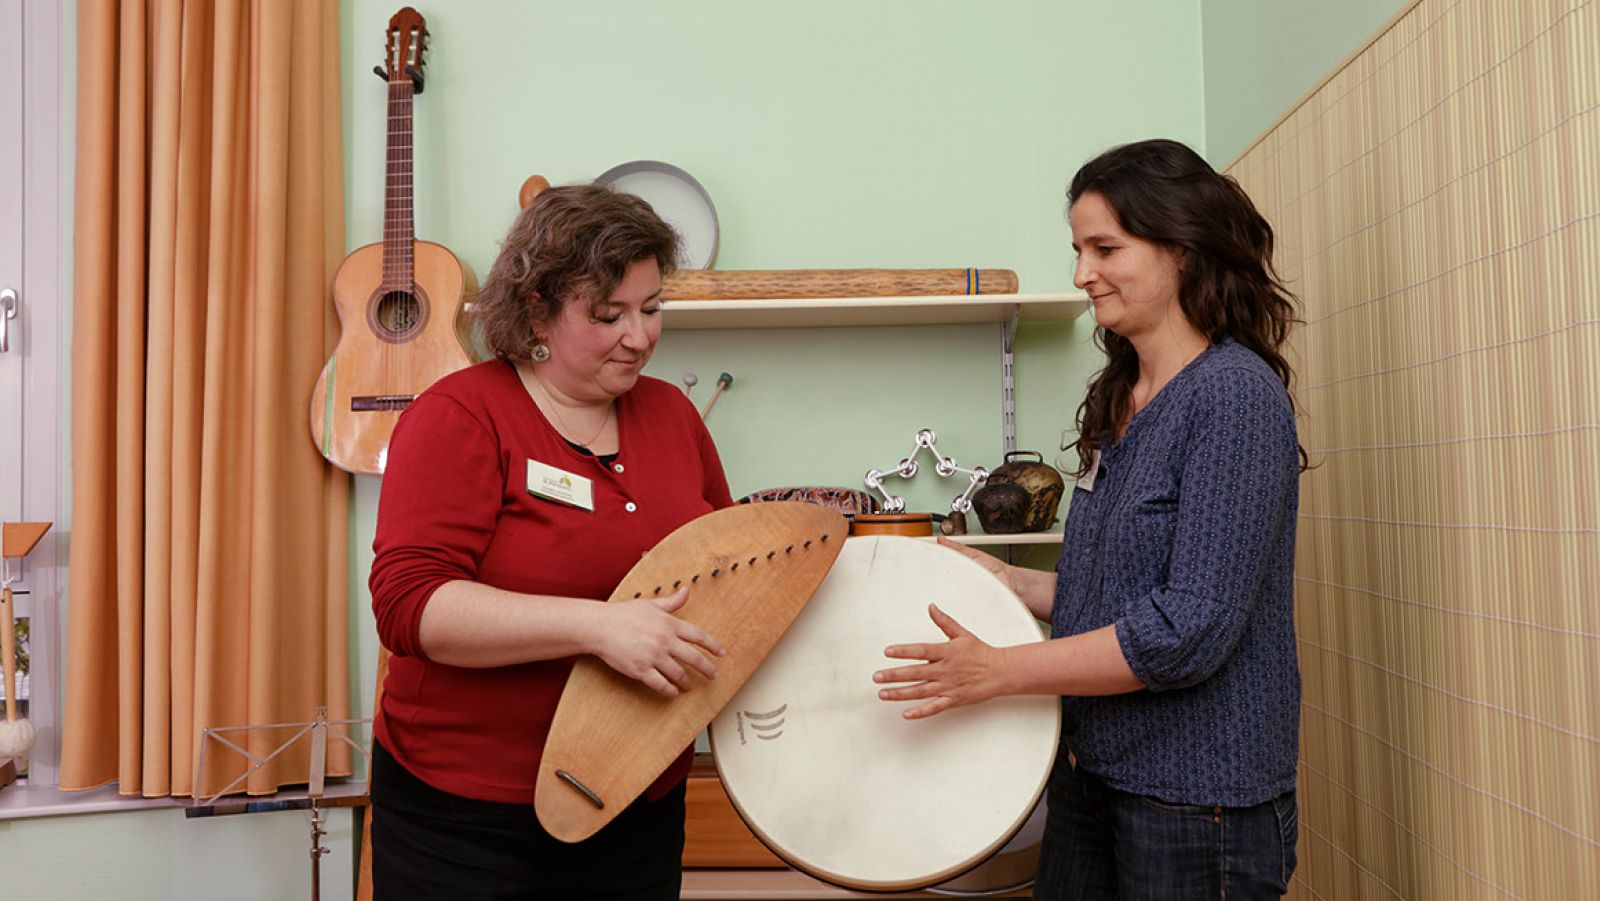 Musiktherapie Personal mit Instrument